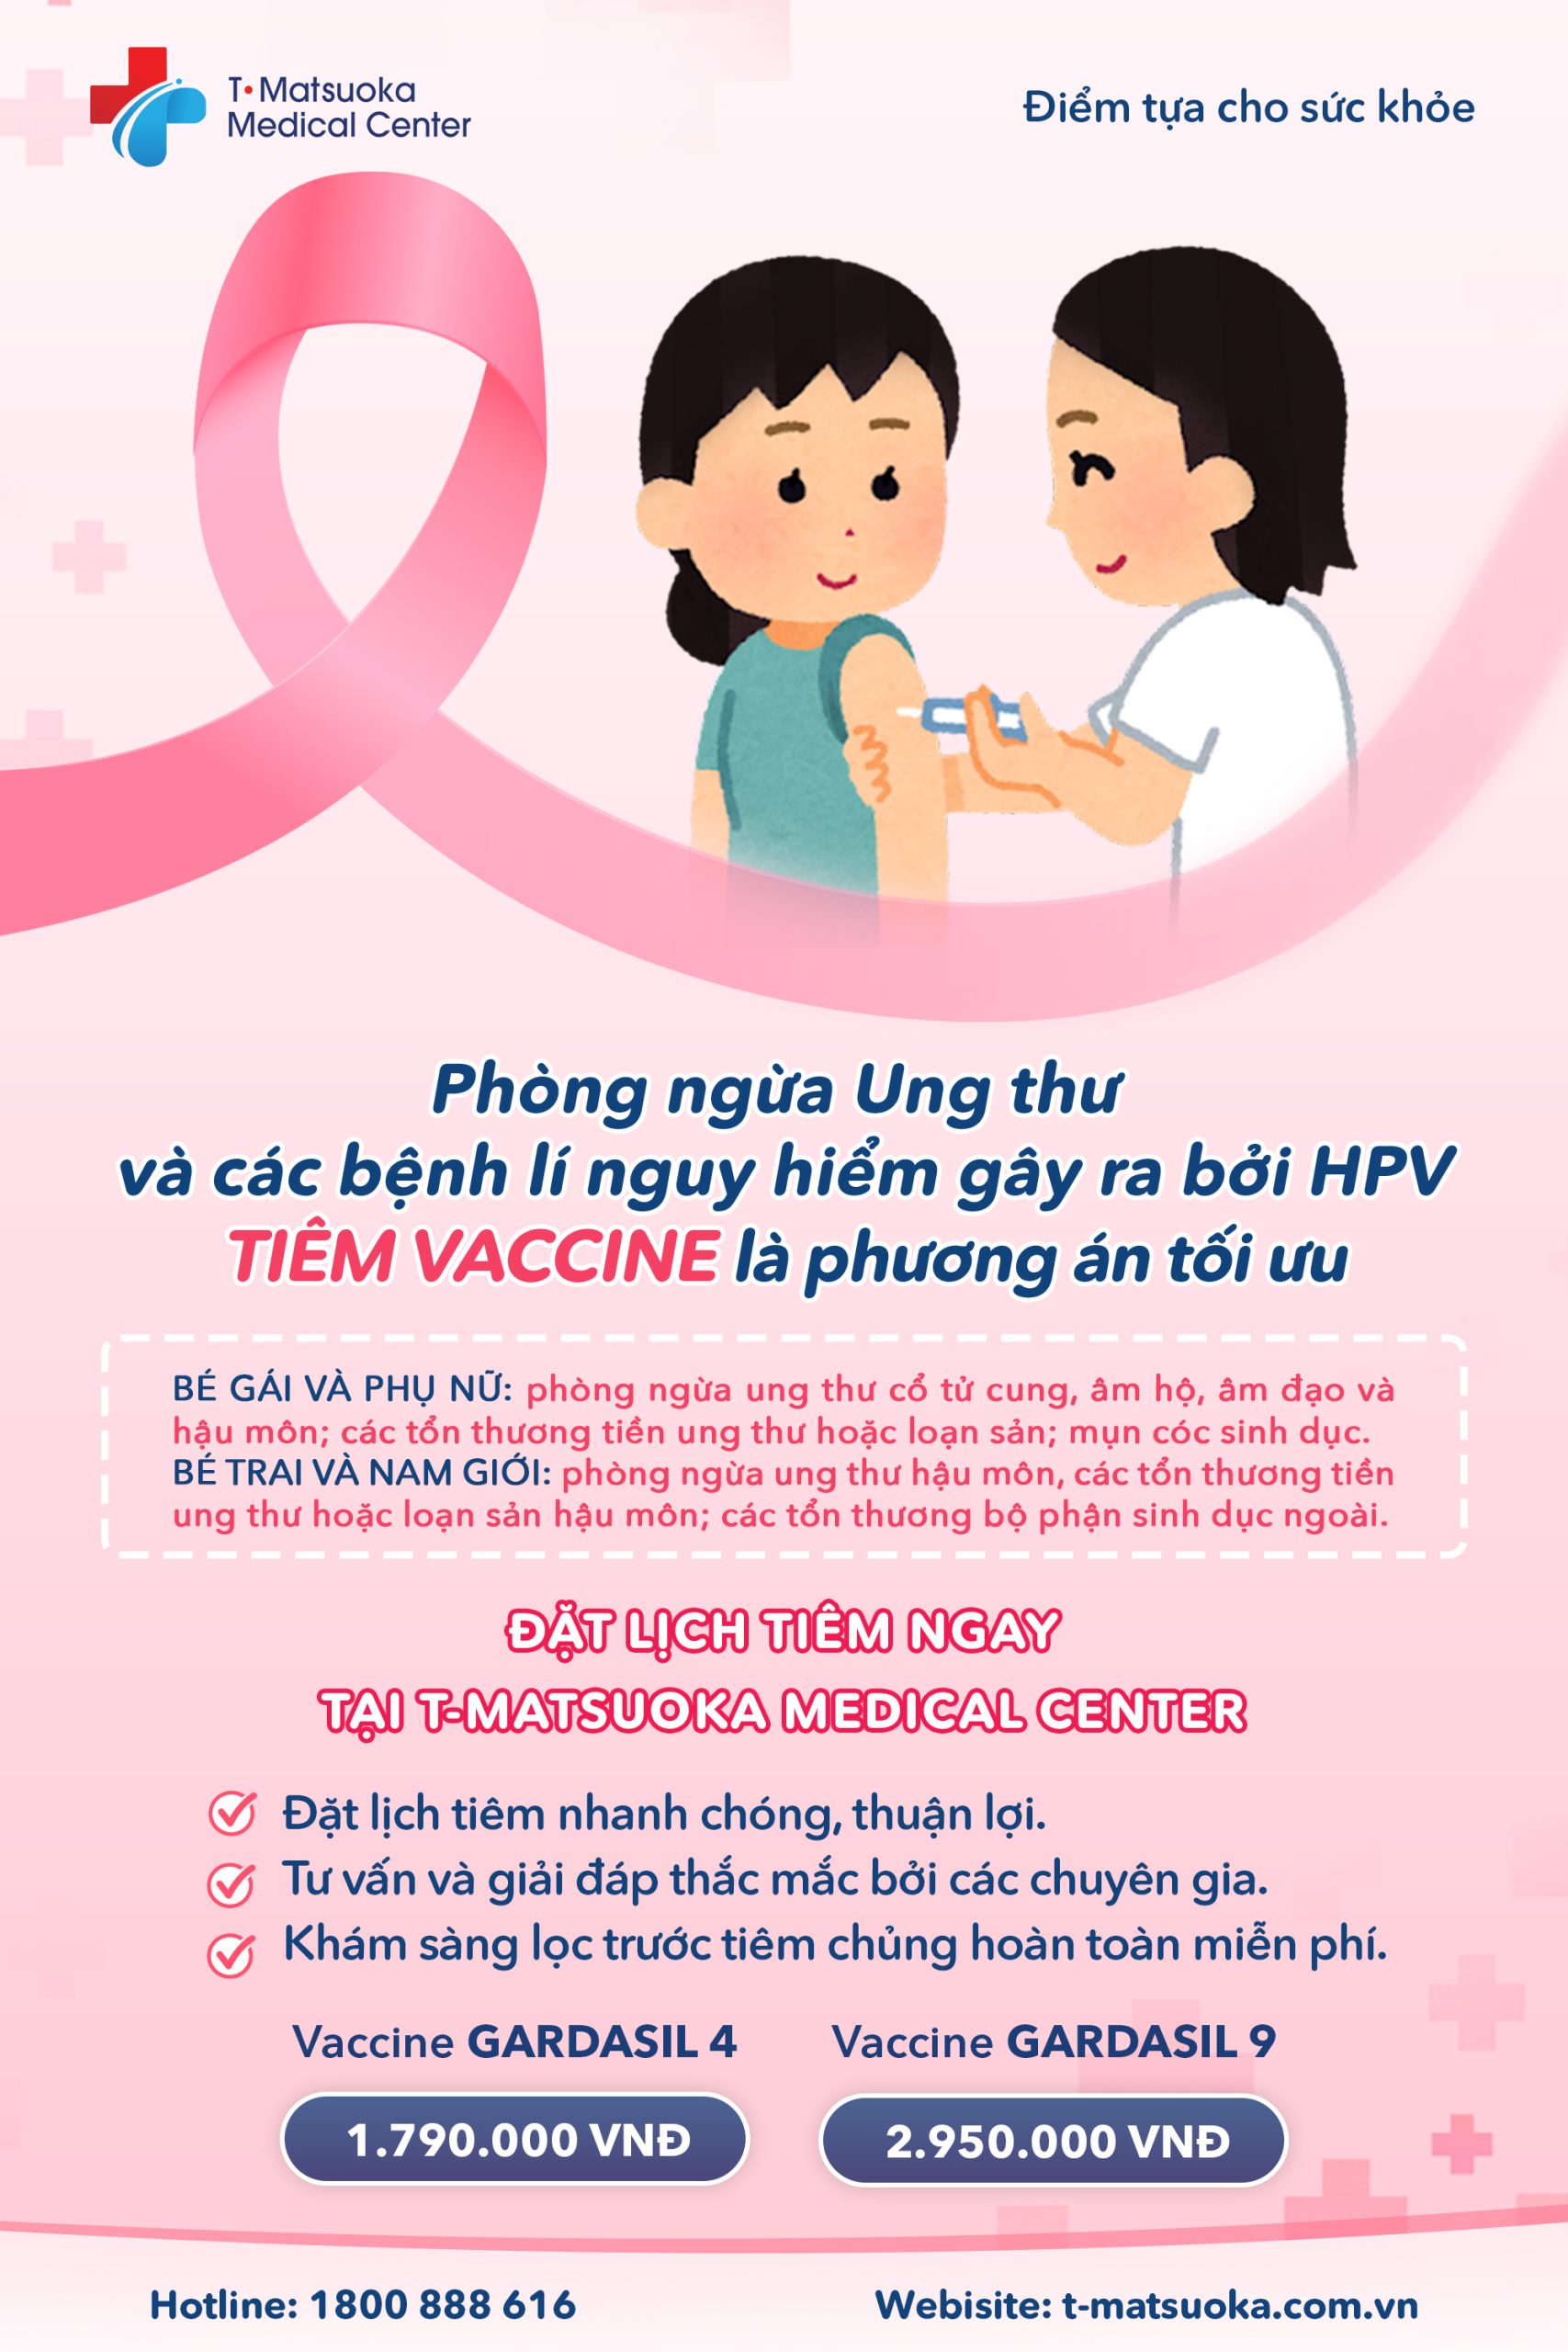 Tiêm vaccine HPV có cần khám trước không?